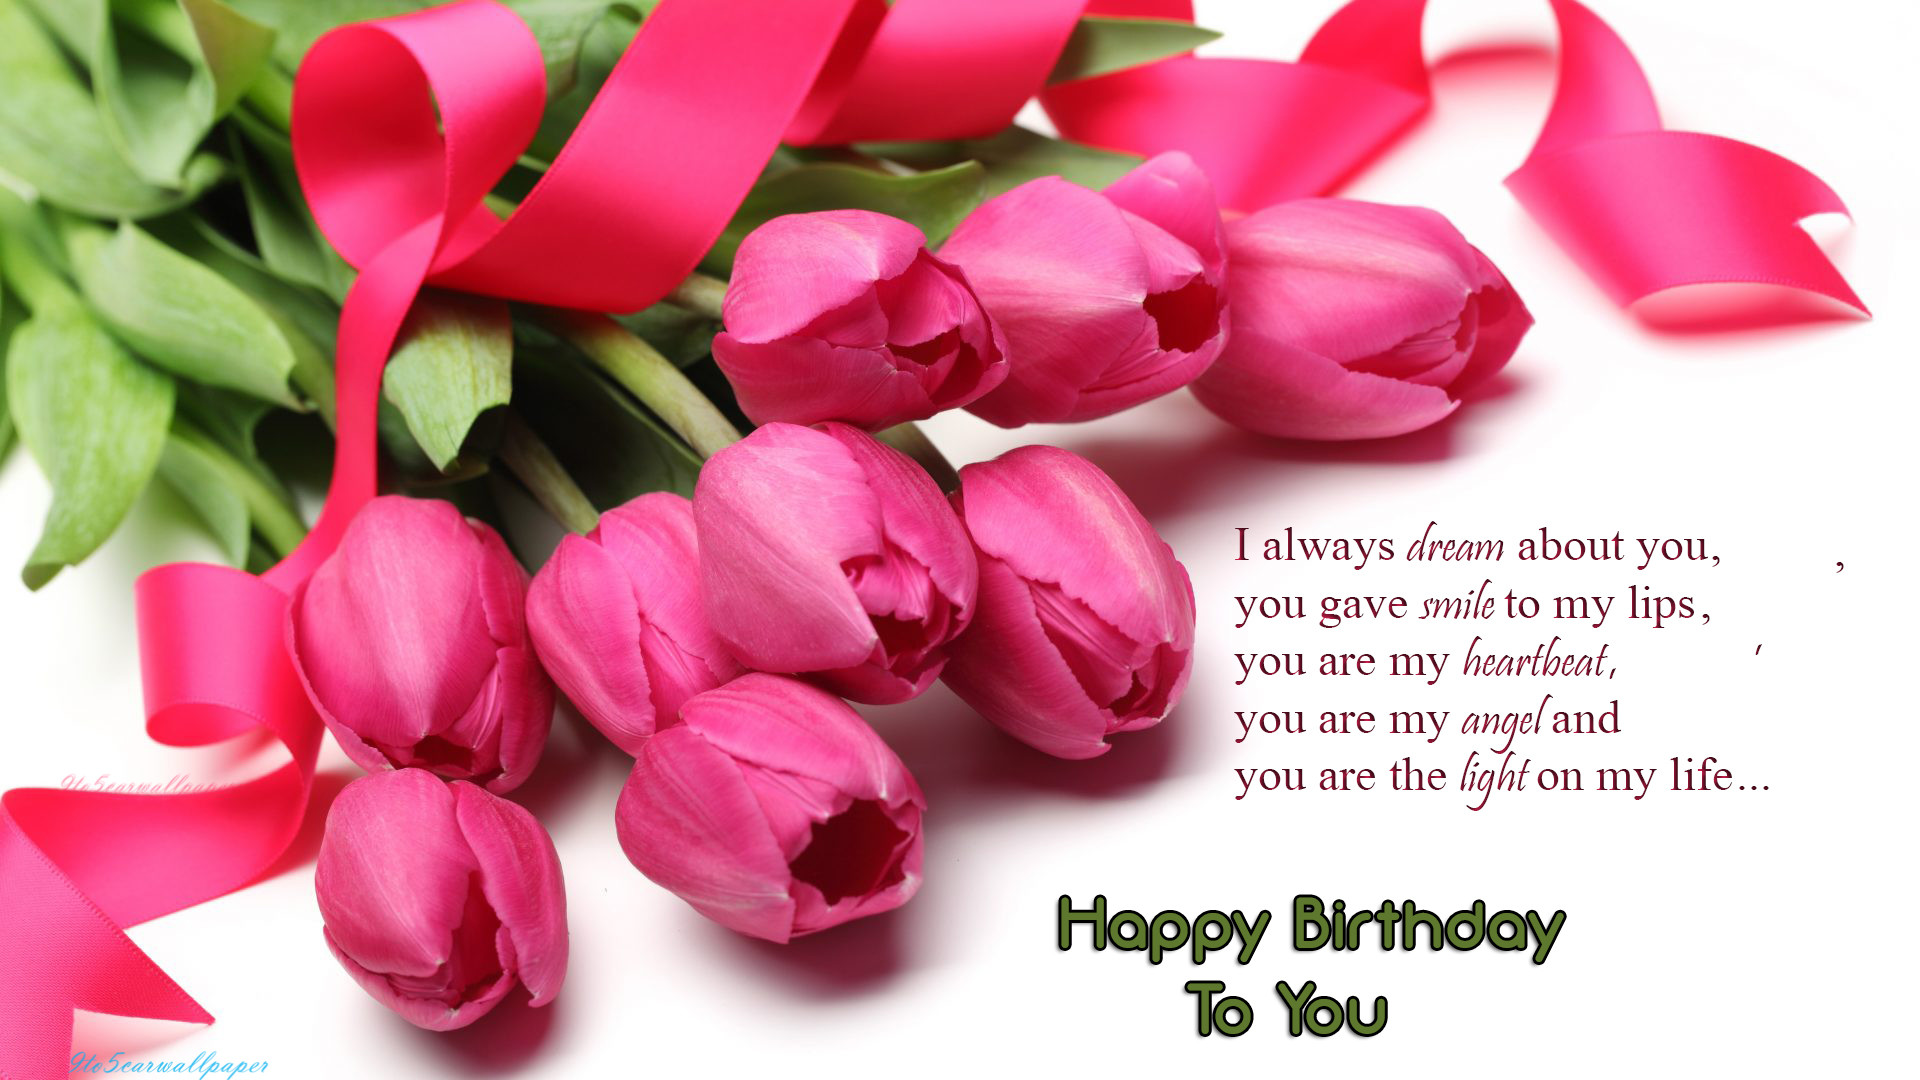 auguri di compleanno per amante,rosa,petalo,fiore,tulipano,pianta